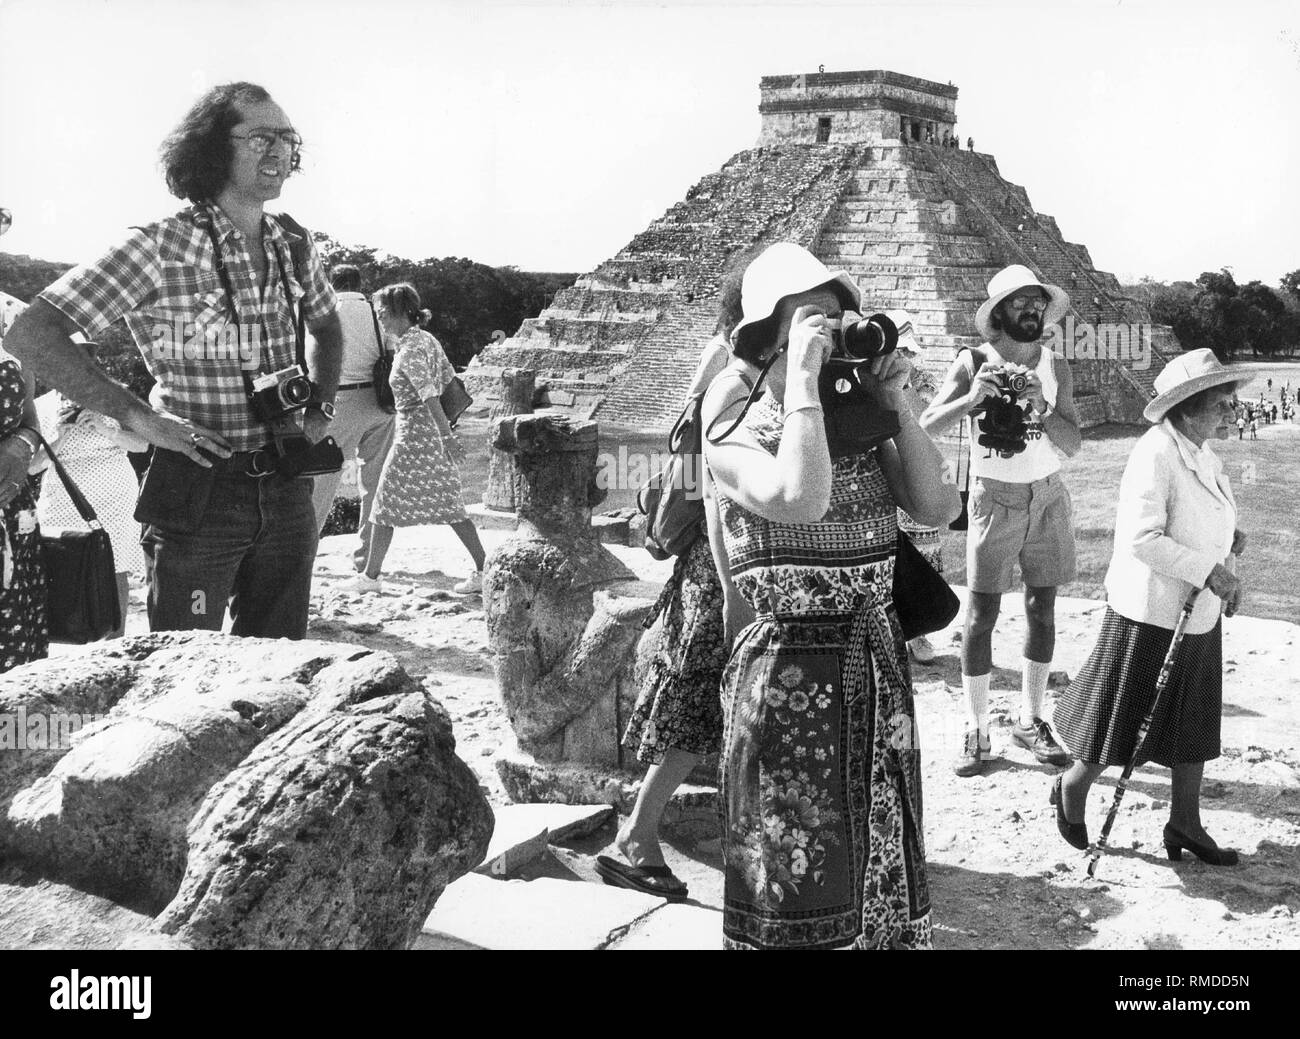 Photographier les touristes en face de la pyramide El Castillo de Tulum à partir de la période maya. Banque D'Images